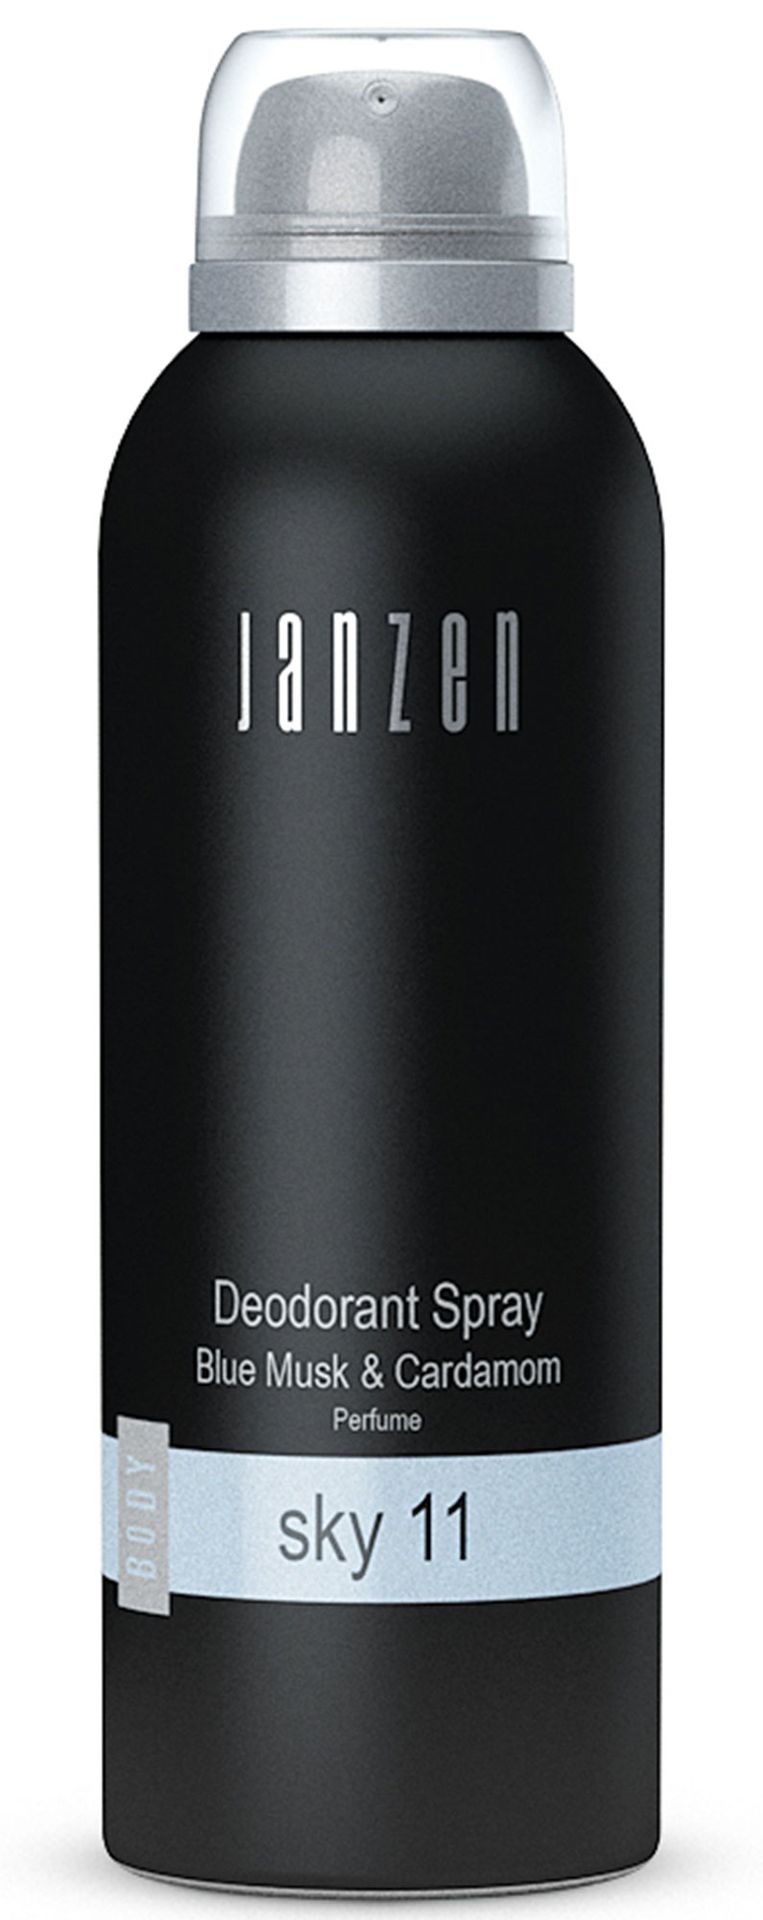 Janzen Janzen Deodorant Groen 2900026002010